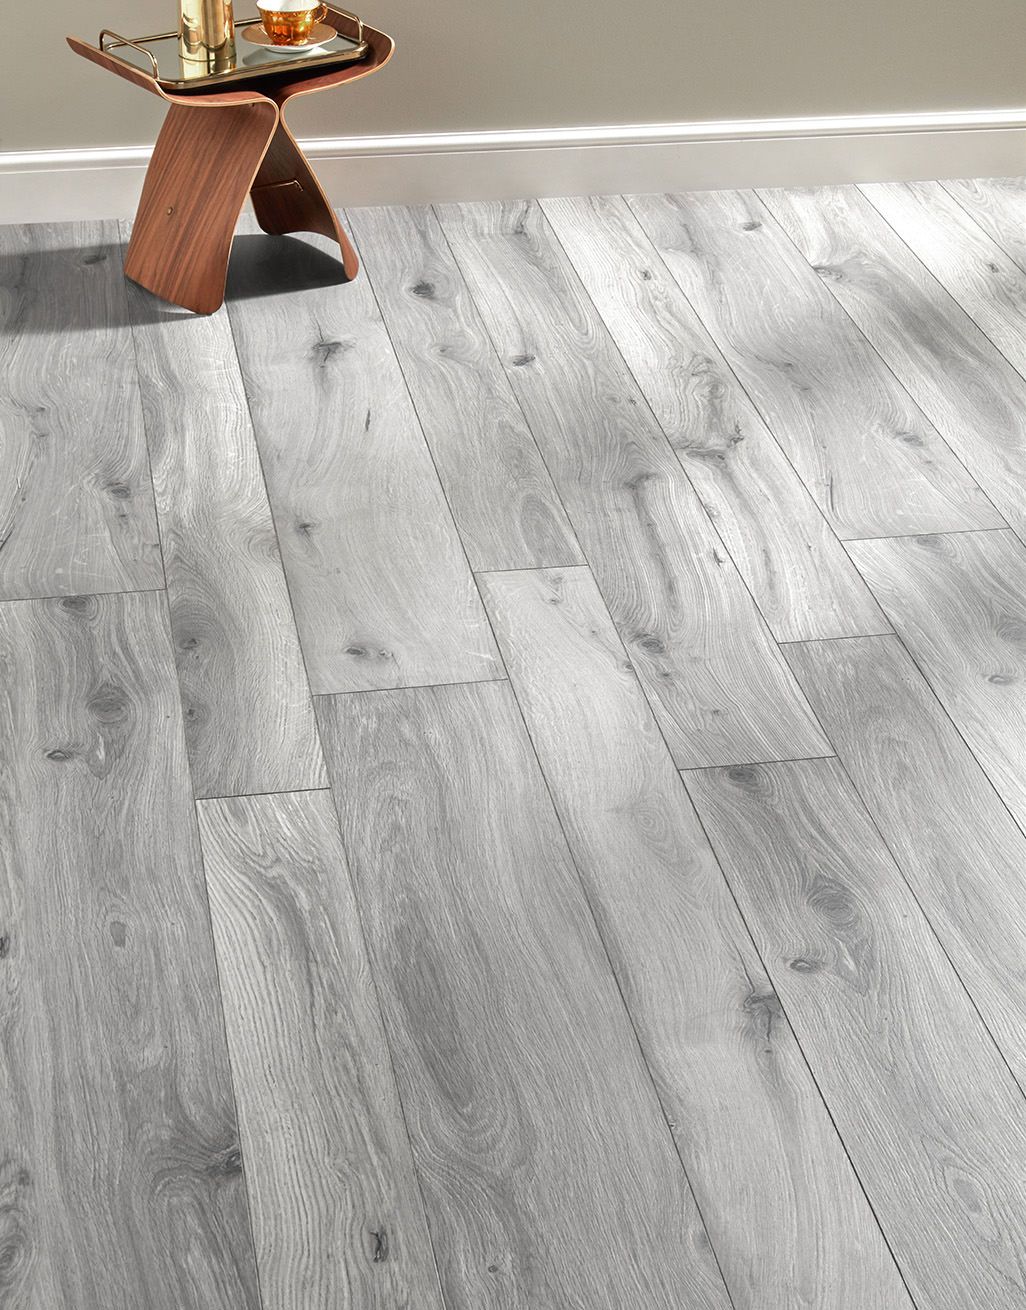 Coastal Grey Oak Laminate Flooring, Grey Wood Grain Laminate Flooring